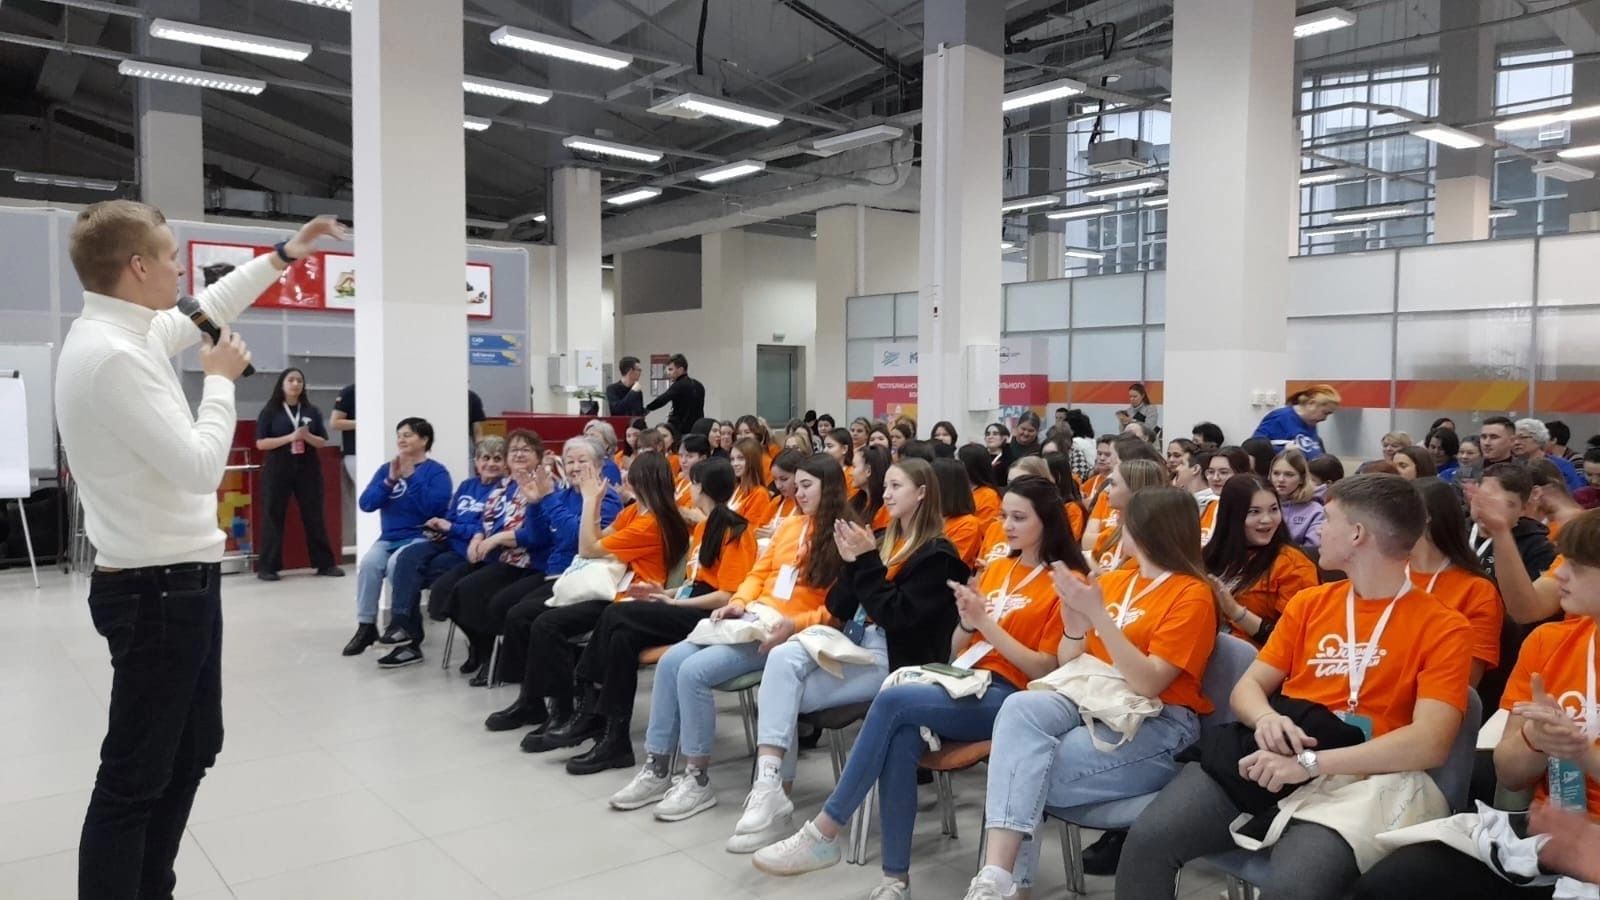 В Казани собрались около 100 волонтеров Татарстана